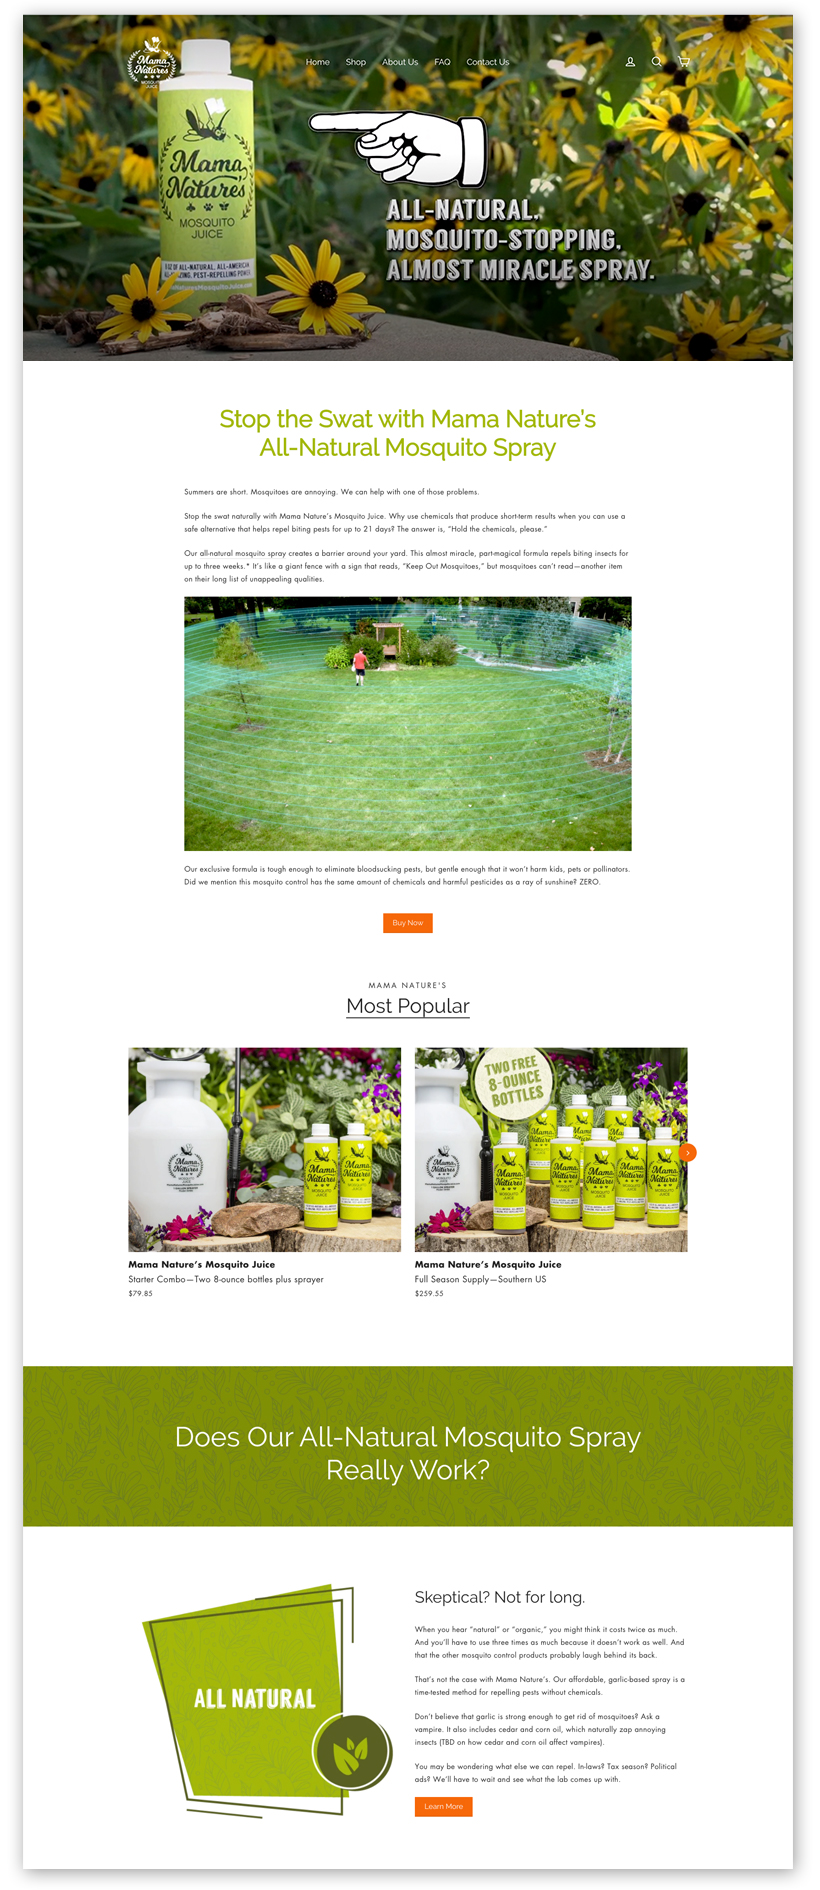 Mama Nature's Mosquito Juice Homepage